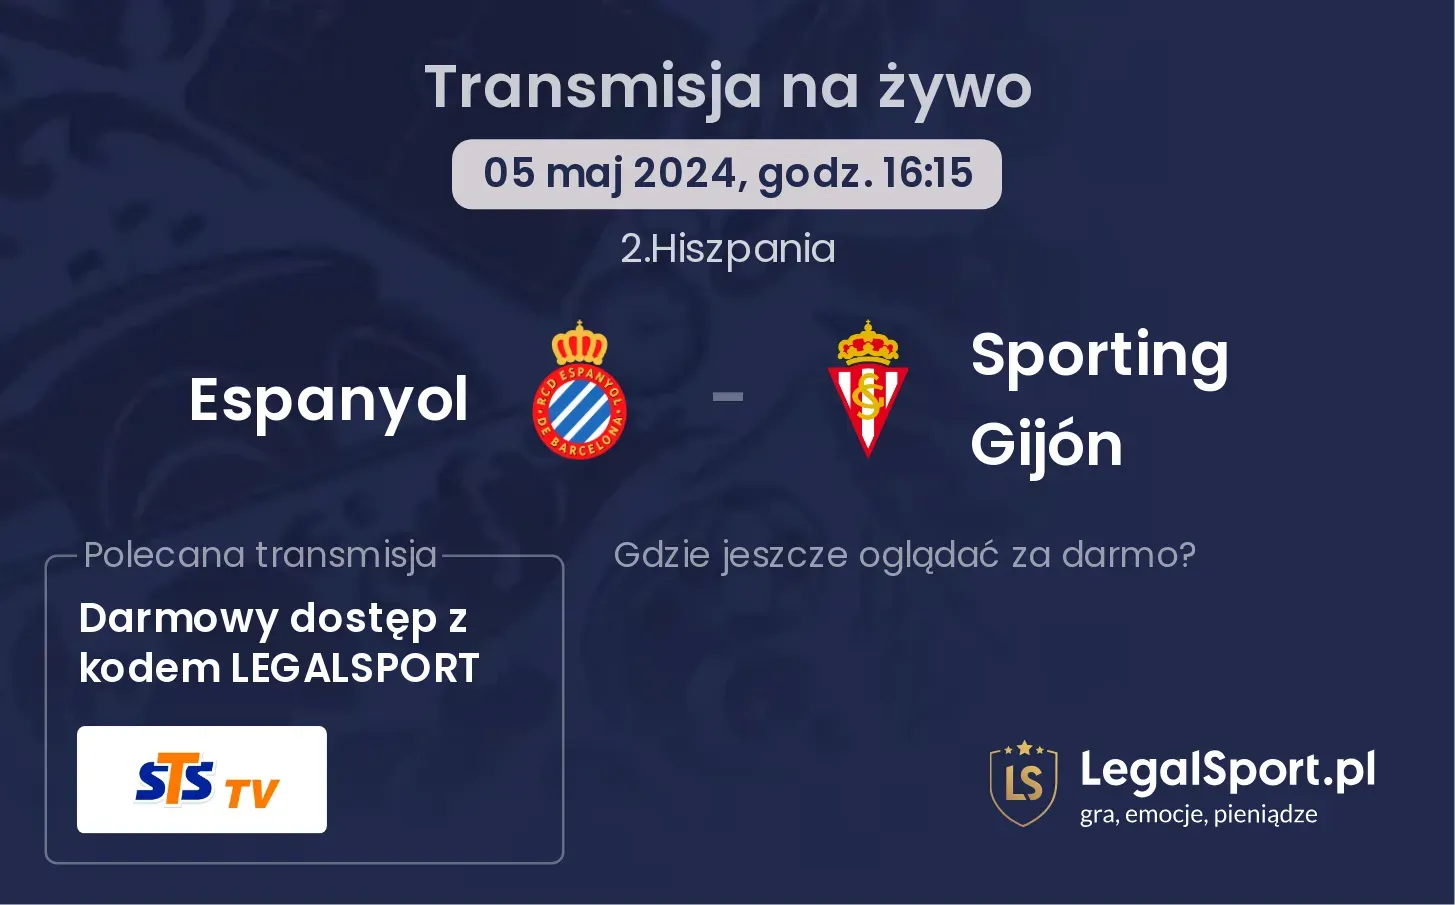 Espanyol - Sporting Gijón transmisja na żywo